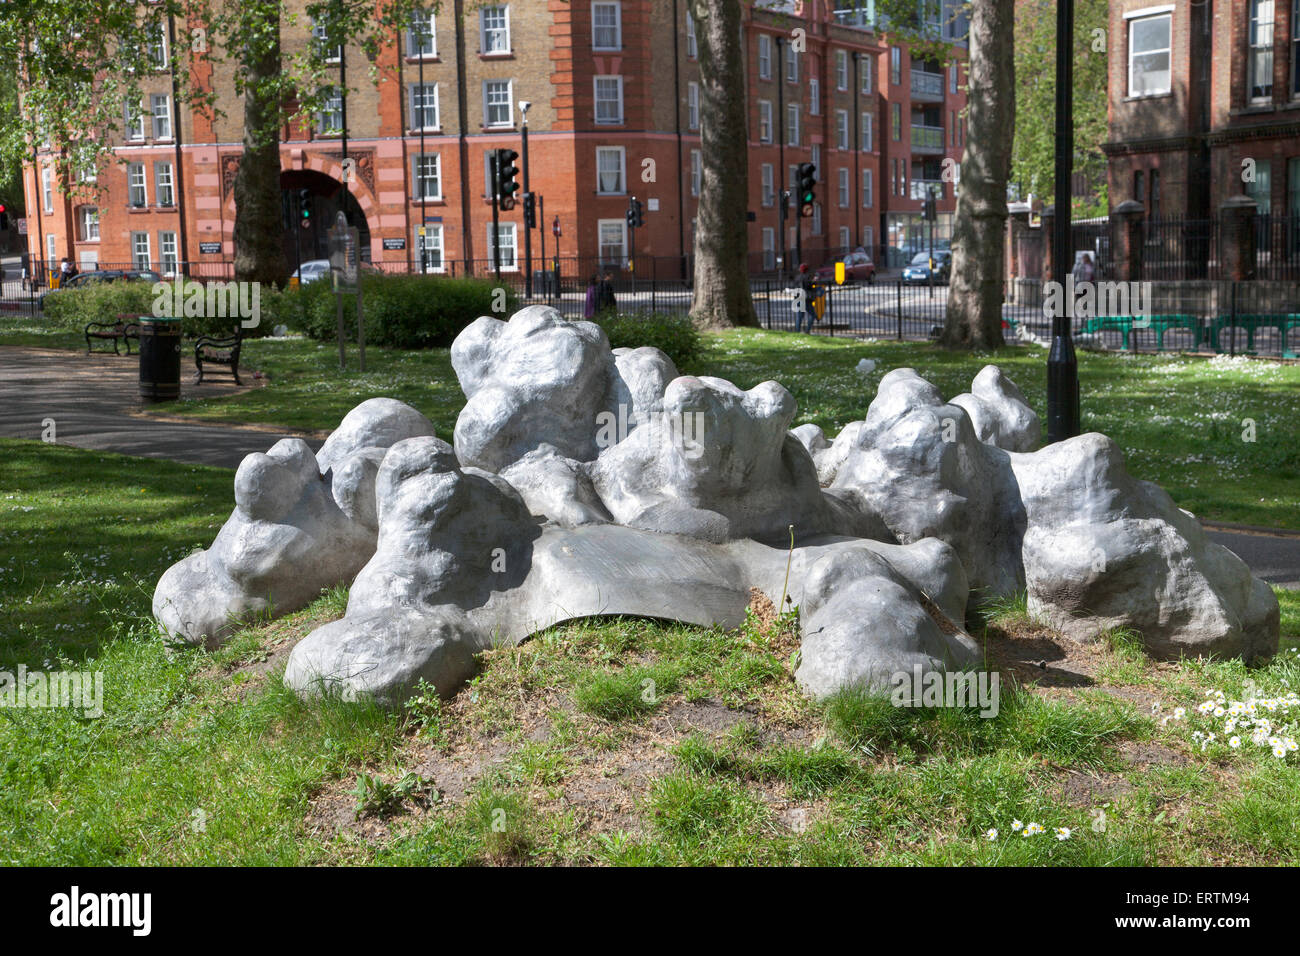 Silver Clouds sculpture by Robert Worley in Goldington Crescent Gardens, Camden, London, England (2010, cast aluminum) Stock Photo